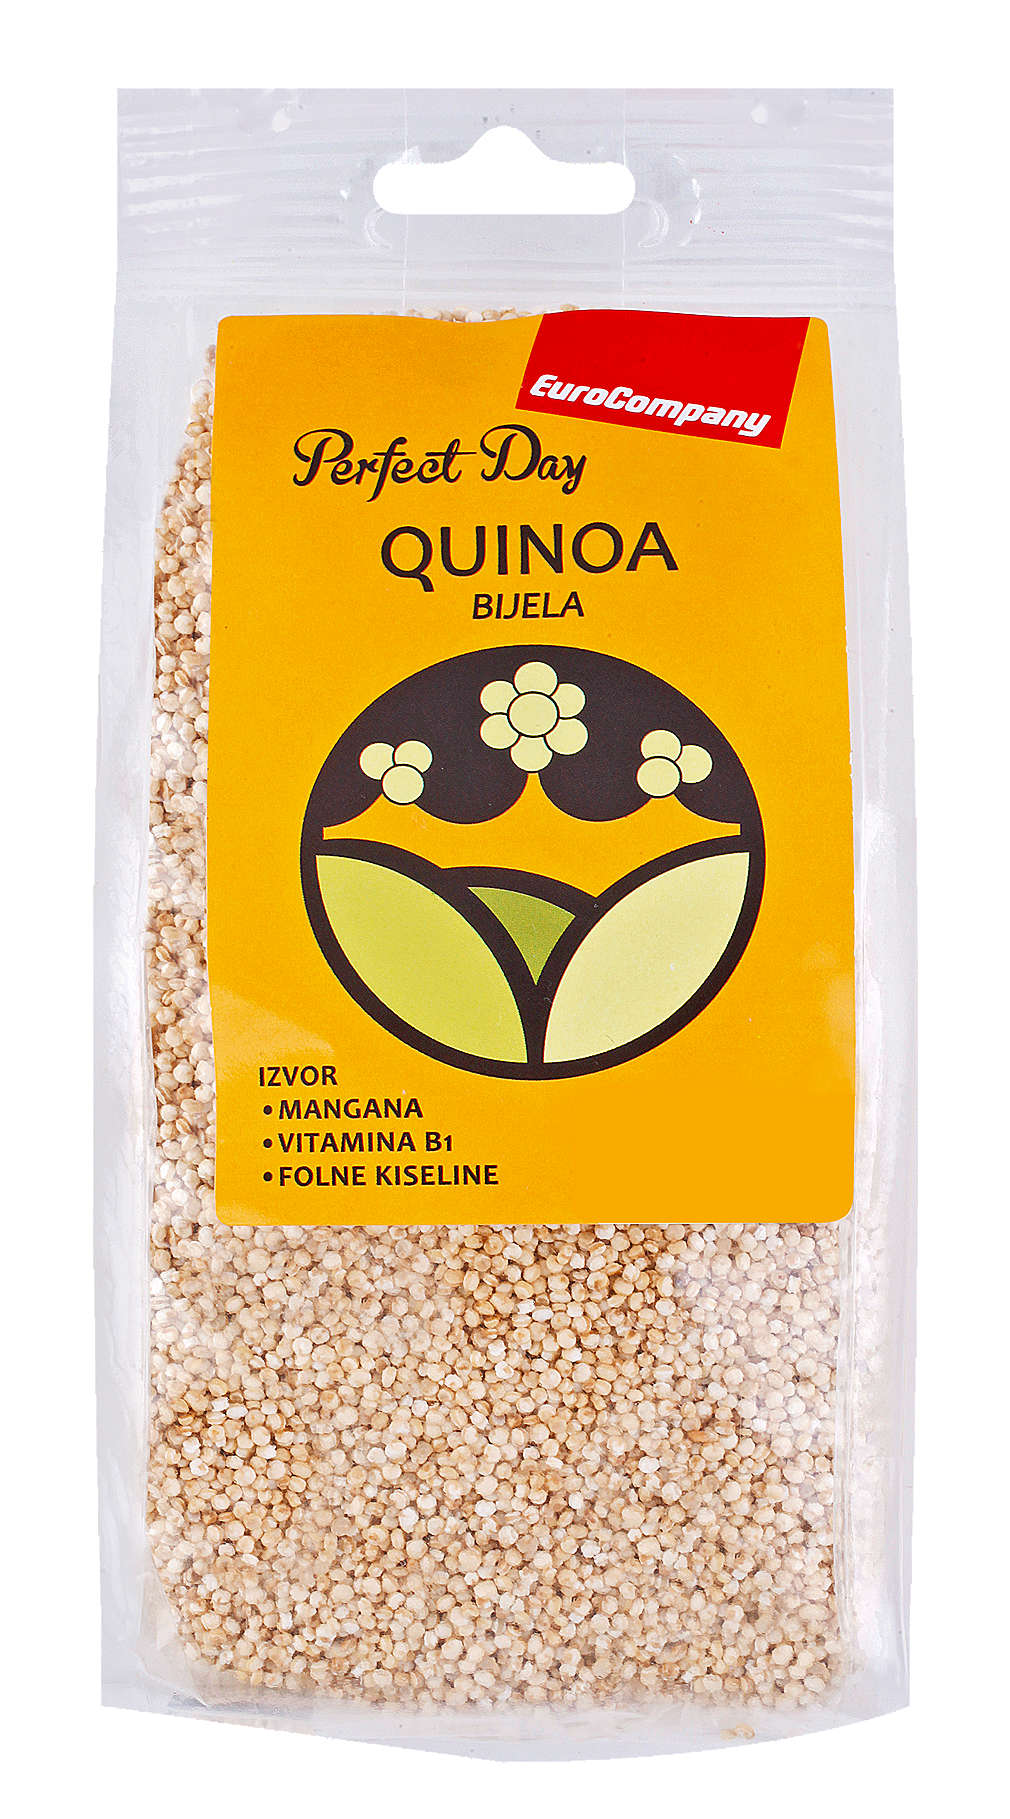 Fotografija ponude Perfect Day Quinoa bijela 200g